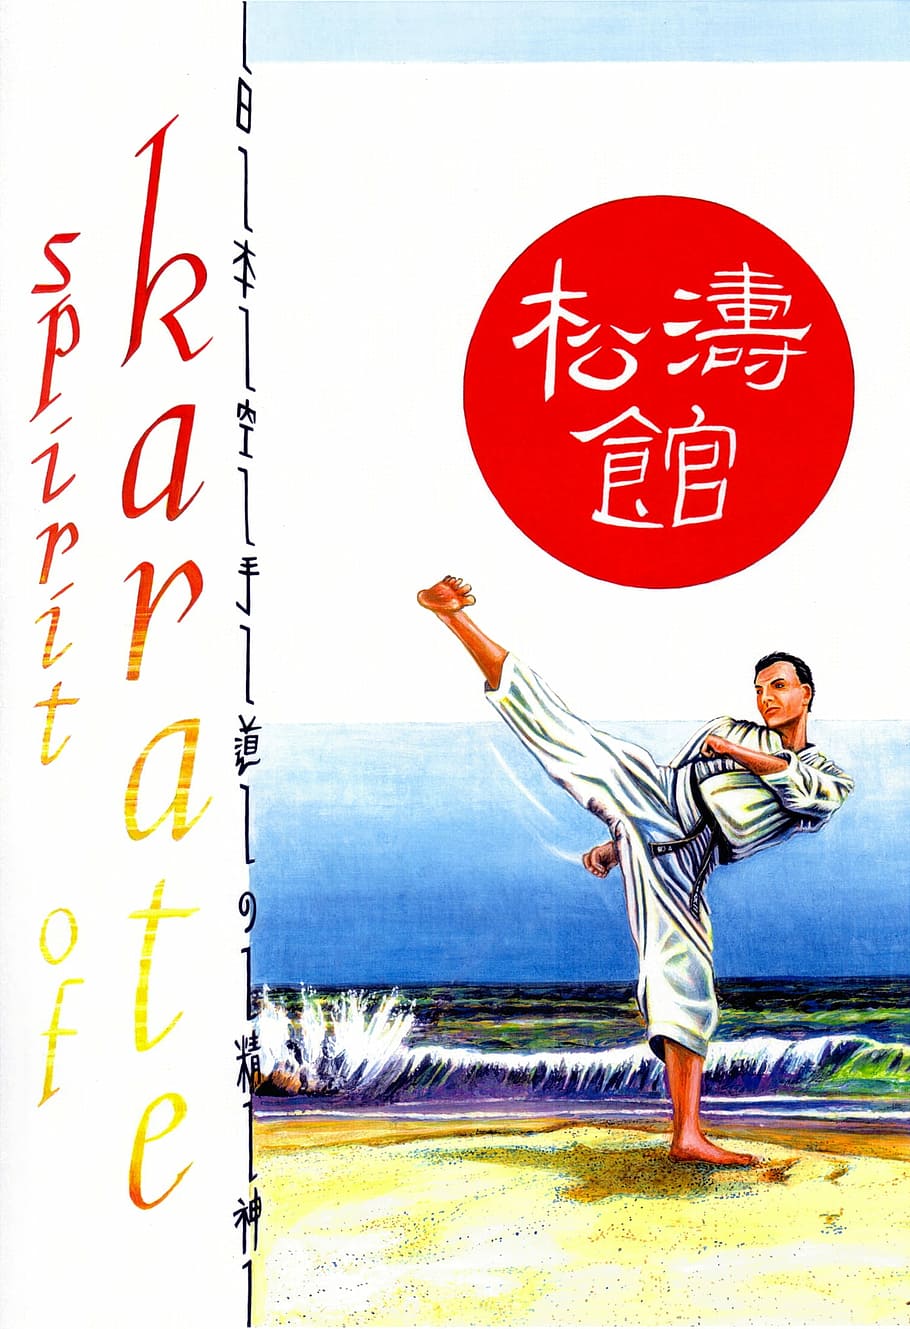 karate figher, alto, patada, karate, patada alta, obras de arte, luchador, artes marciales, póster, dominio público